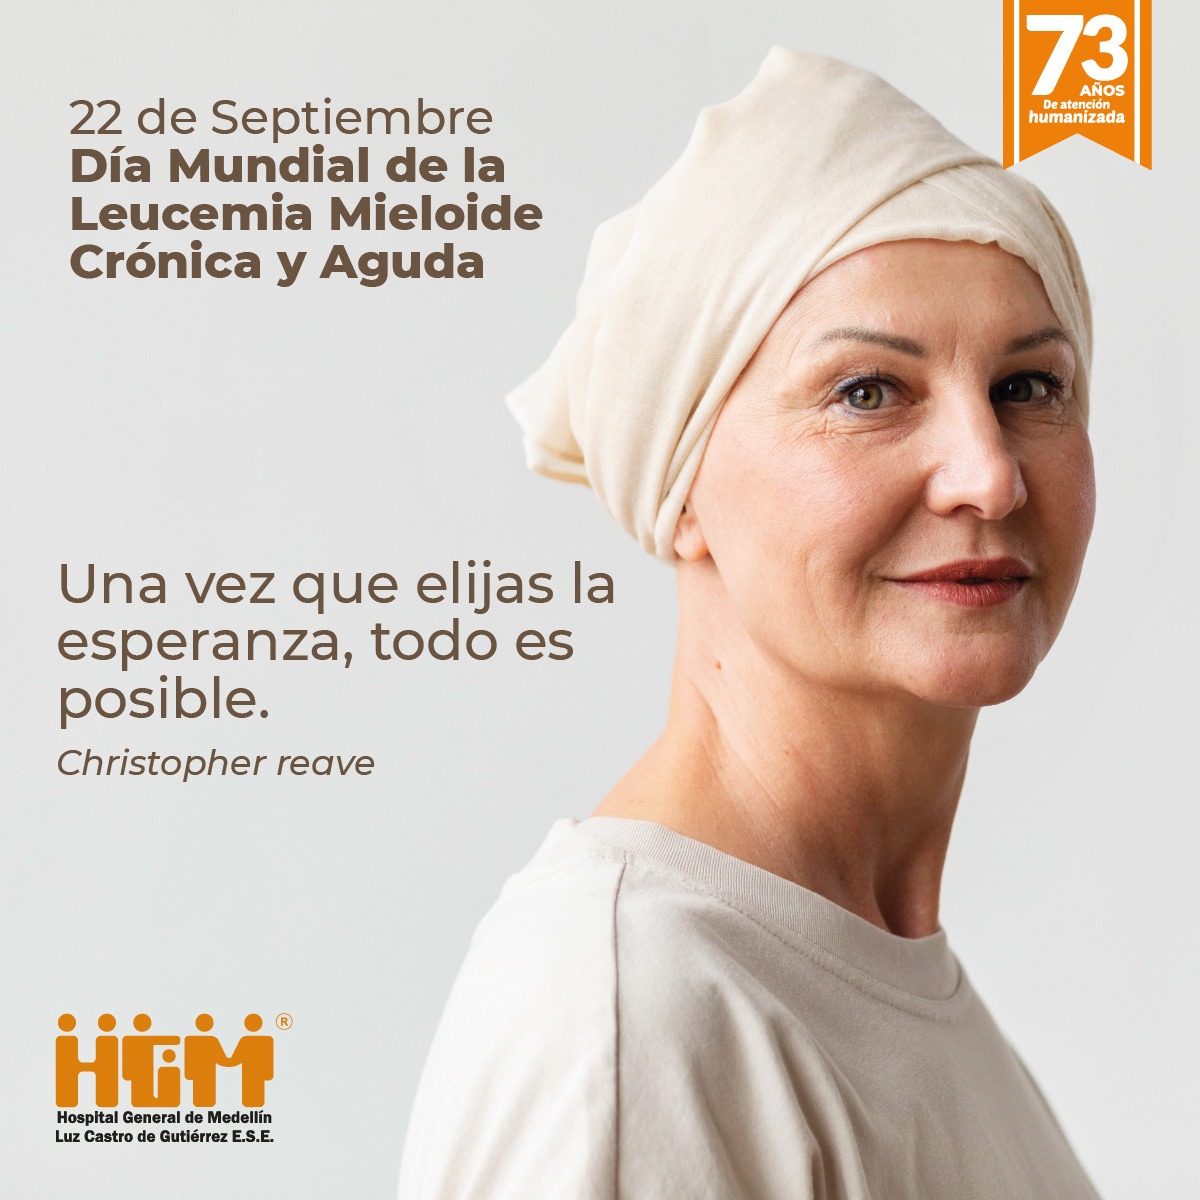 Día Mundial de la Leucemia Mieloide Crónica y Aguda